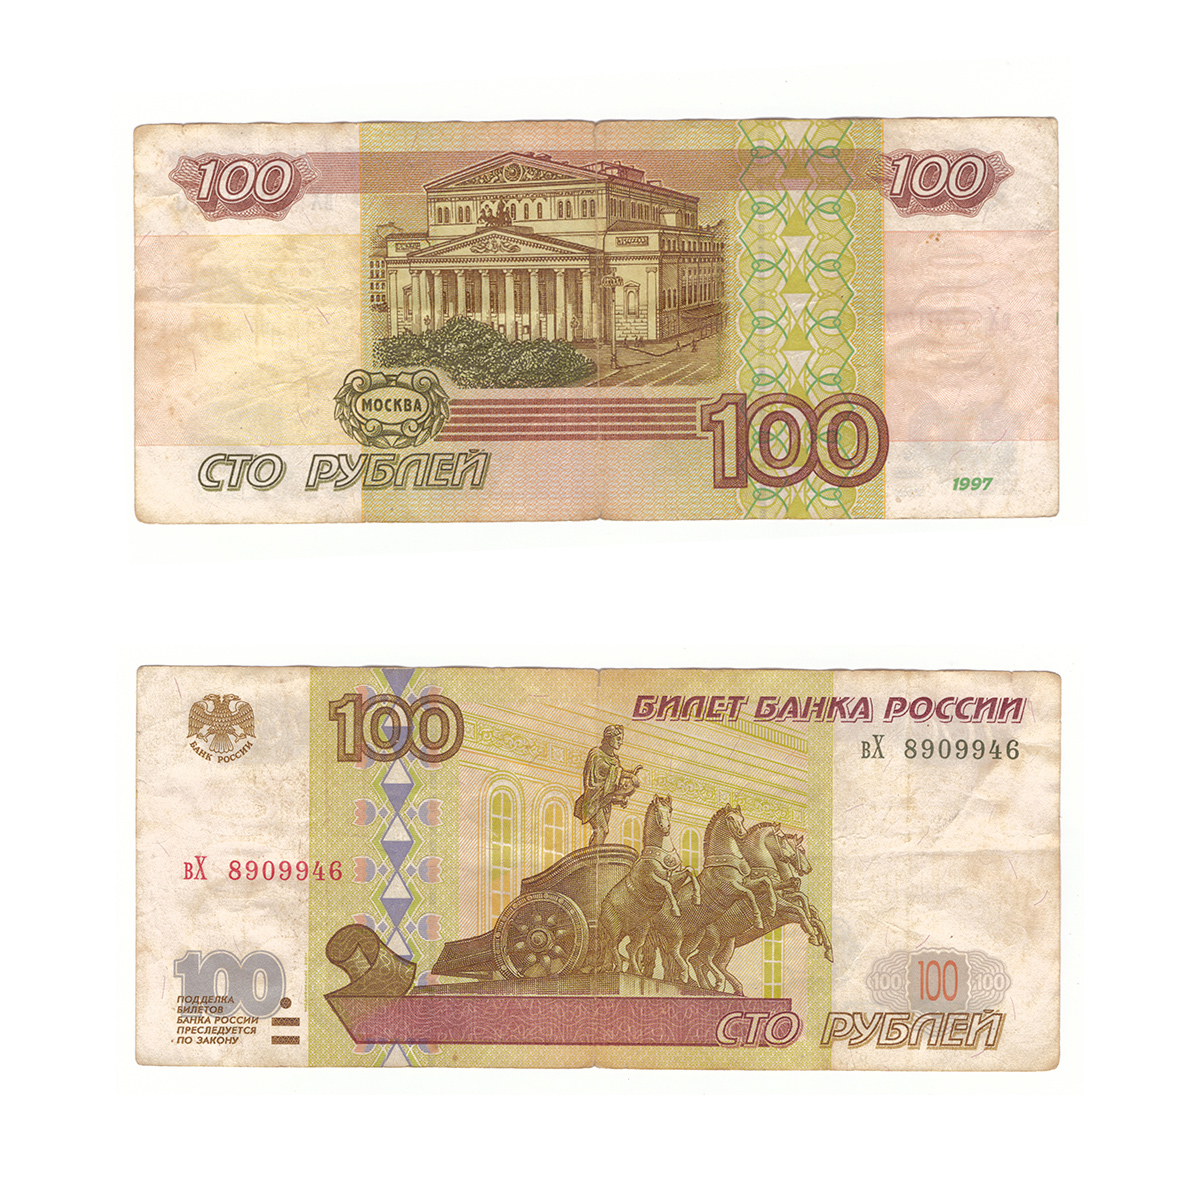 СТО рублей купюра 1997 года